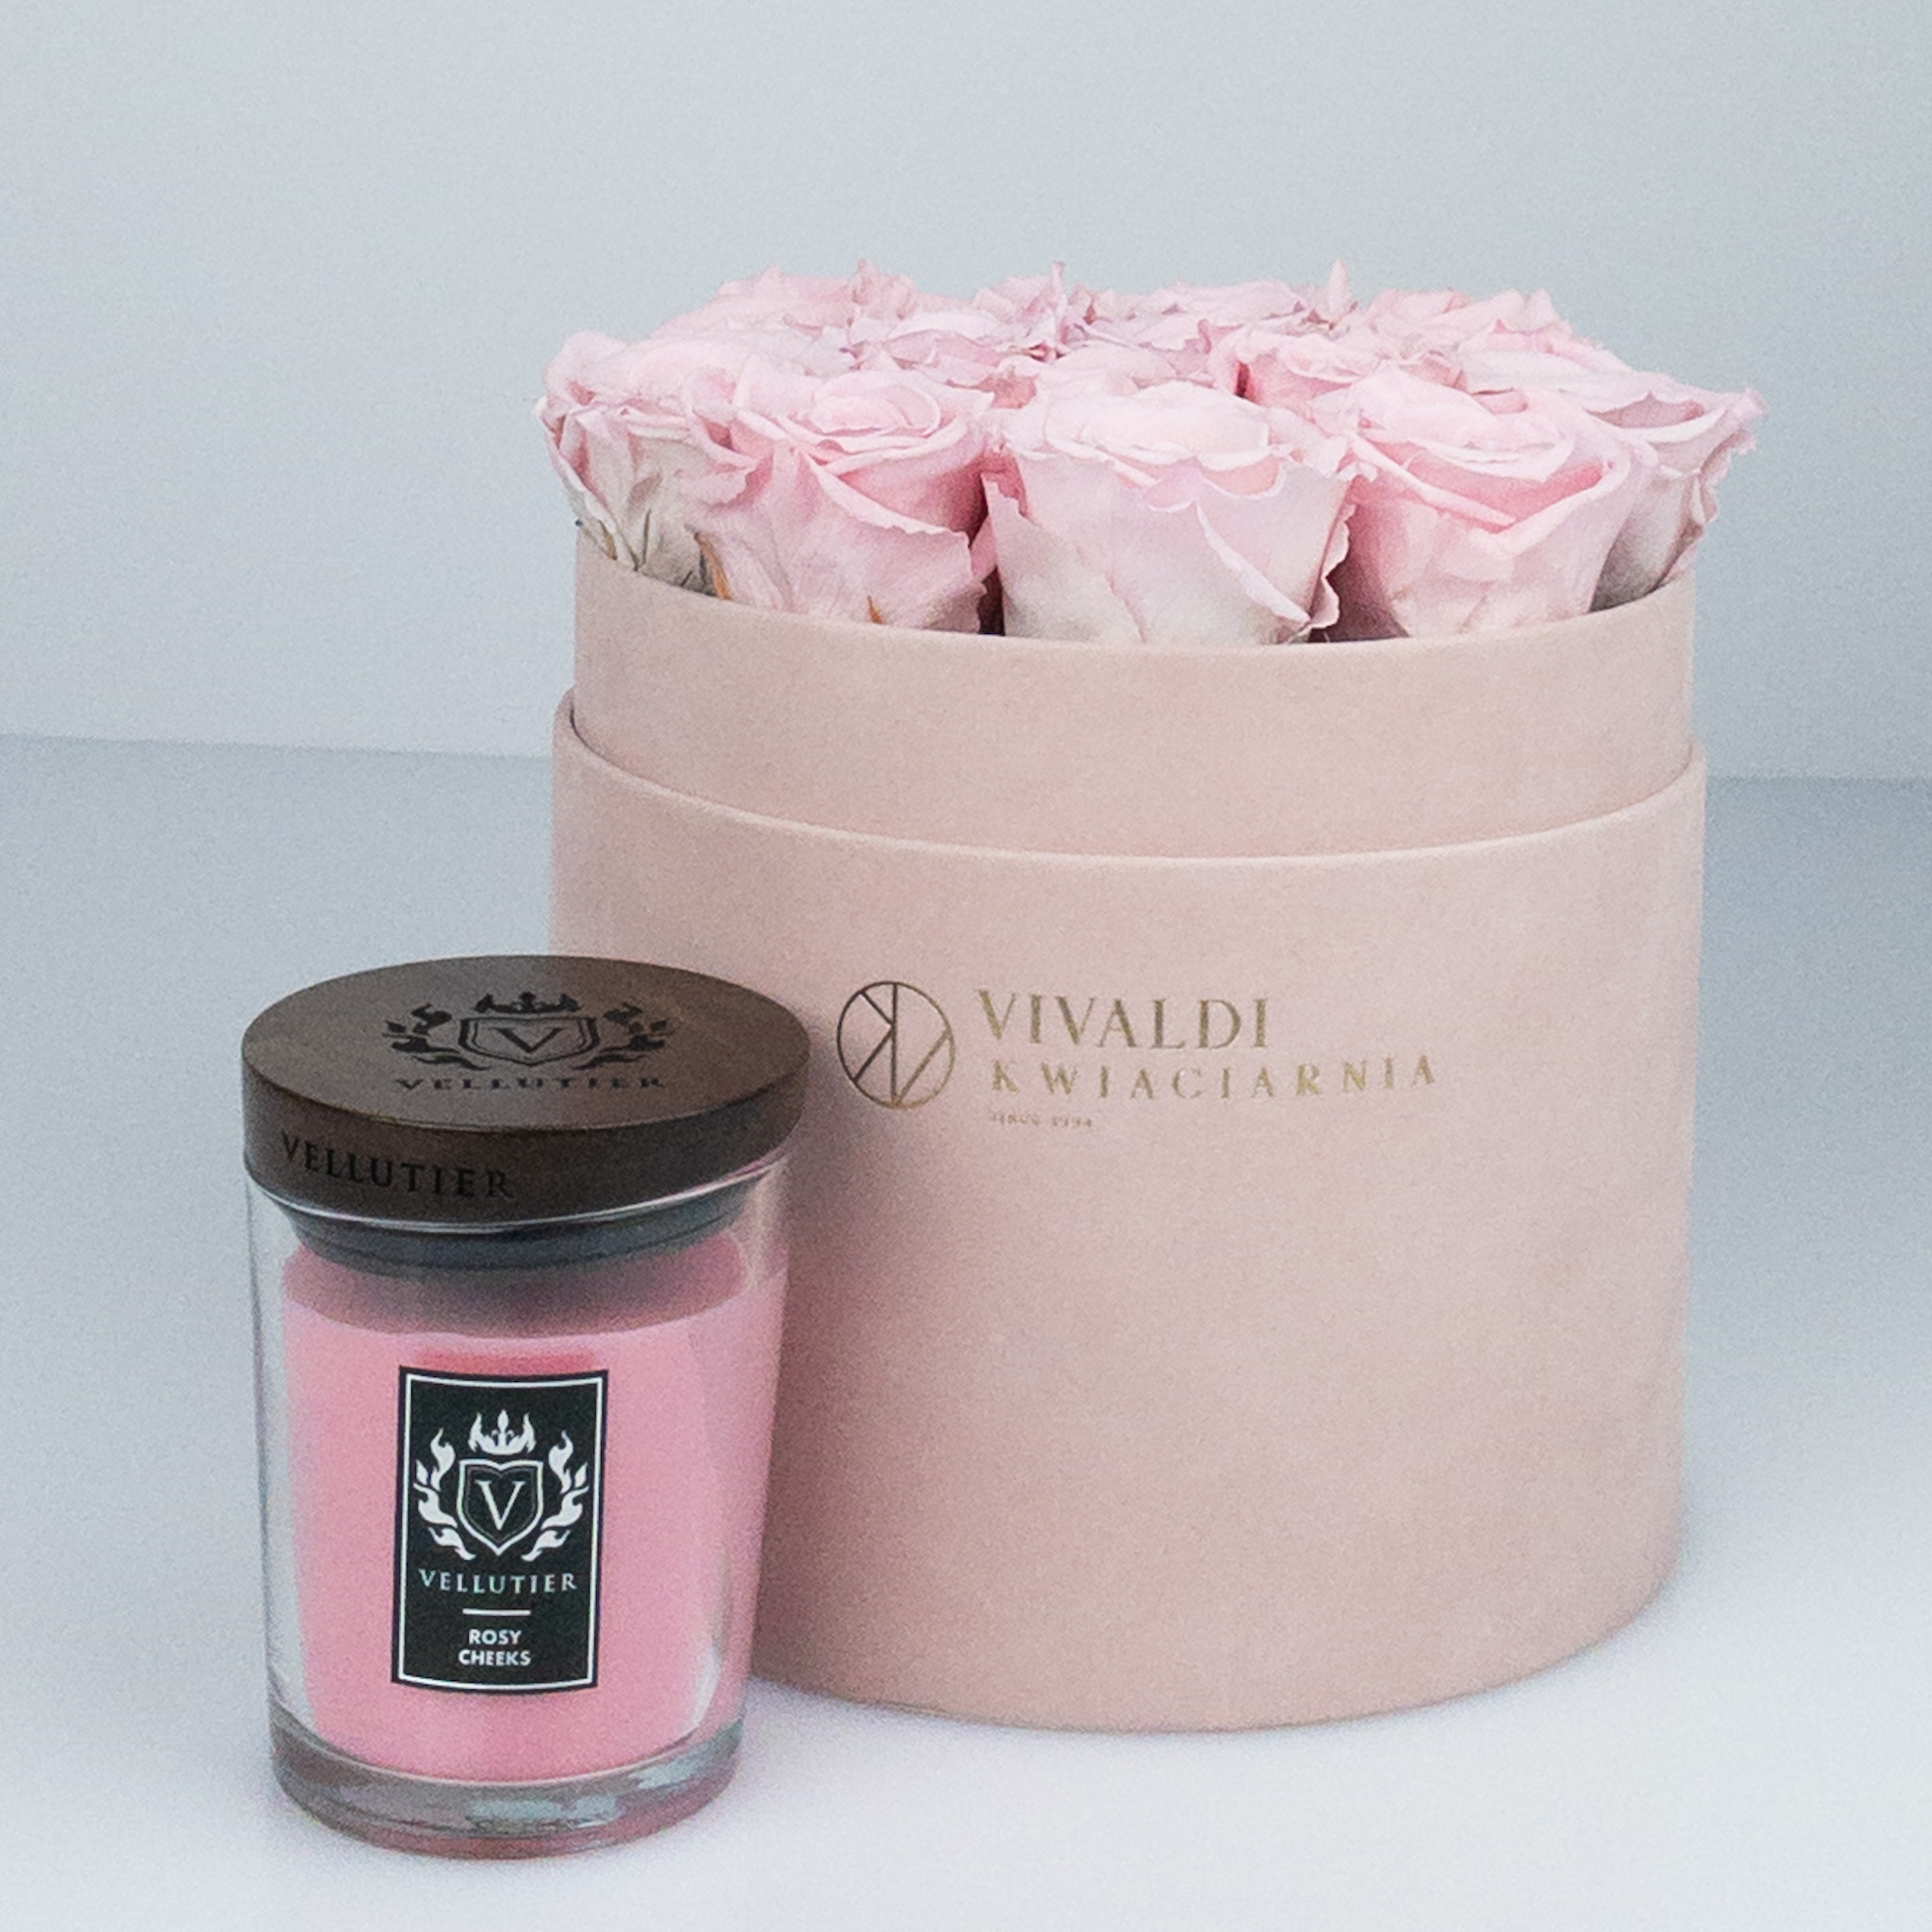 różowy box z różową wieczną różą i średnią świecą Vellutier